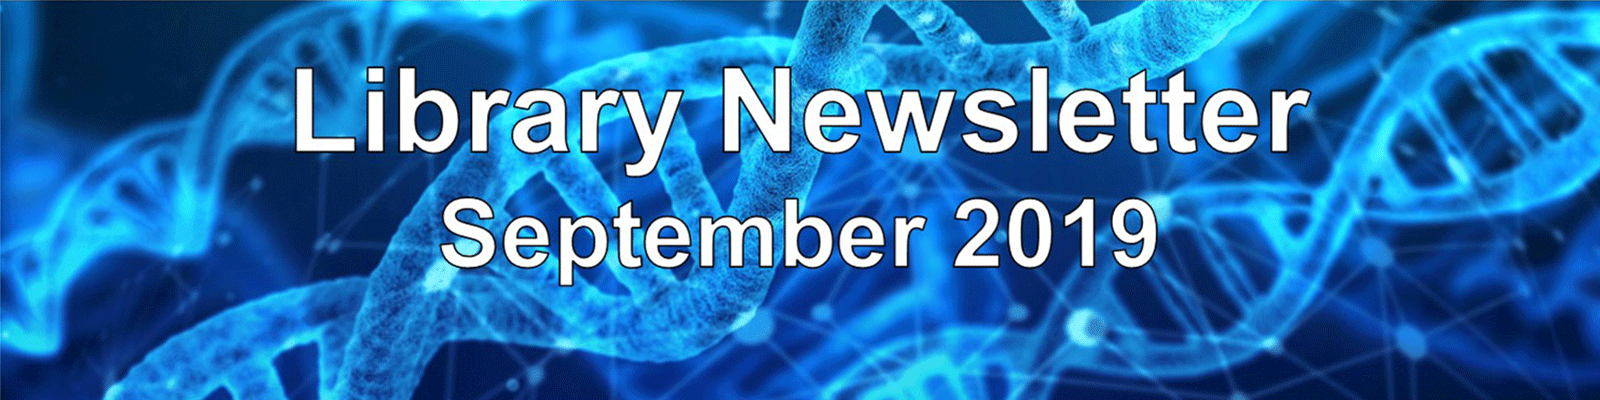 DNA banner Library Newsletter September 2019